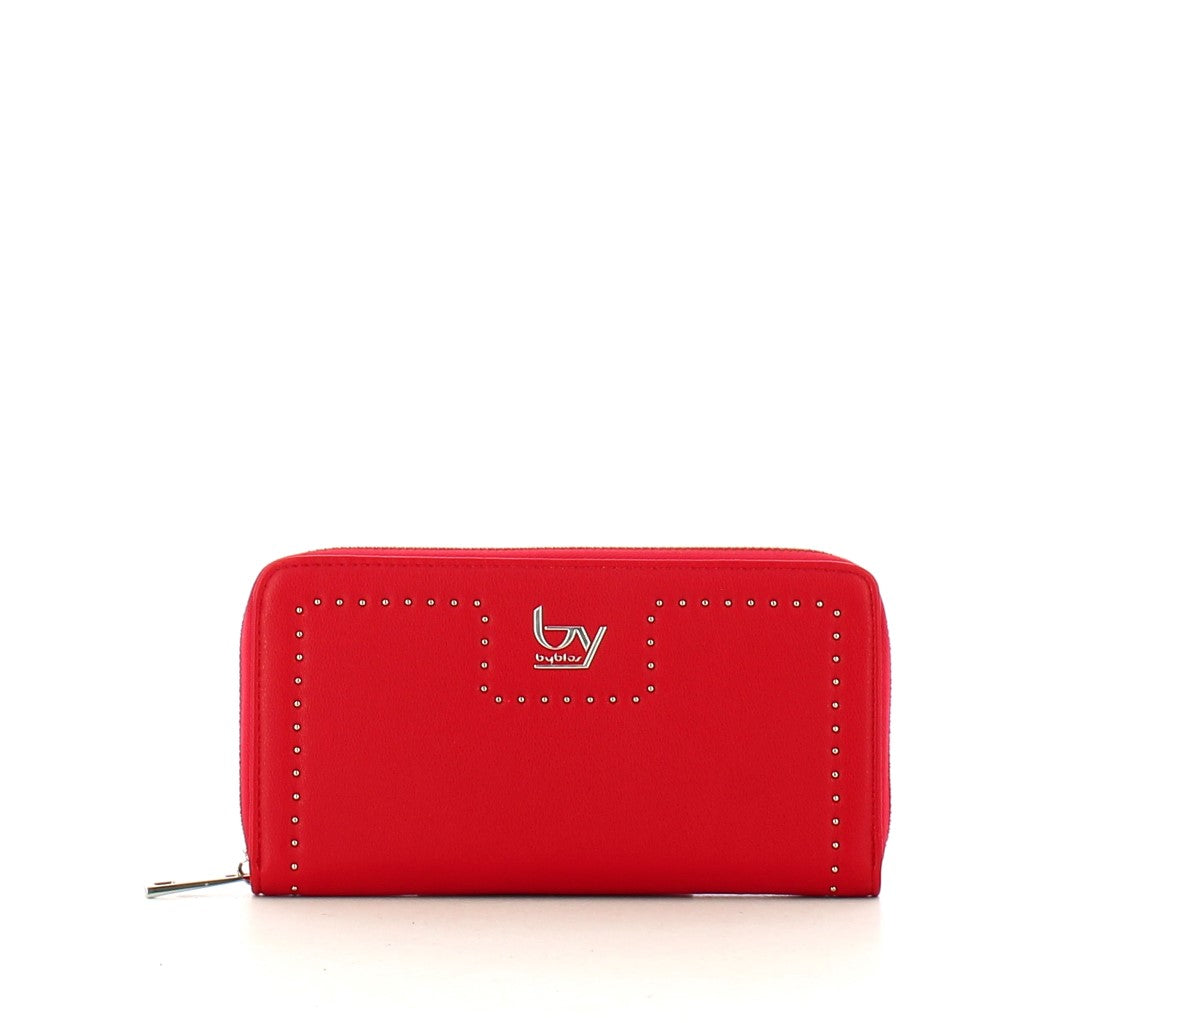 Byblos - Portafoglio Zip Around New Emily Red - 20200013 - RED